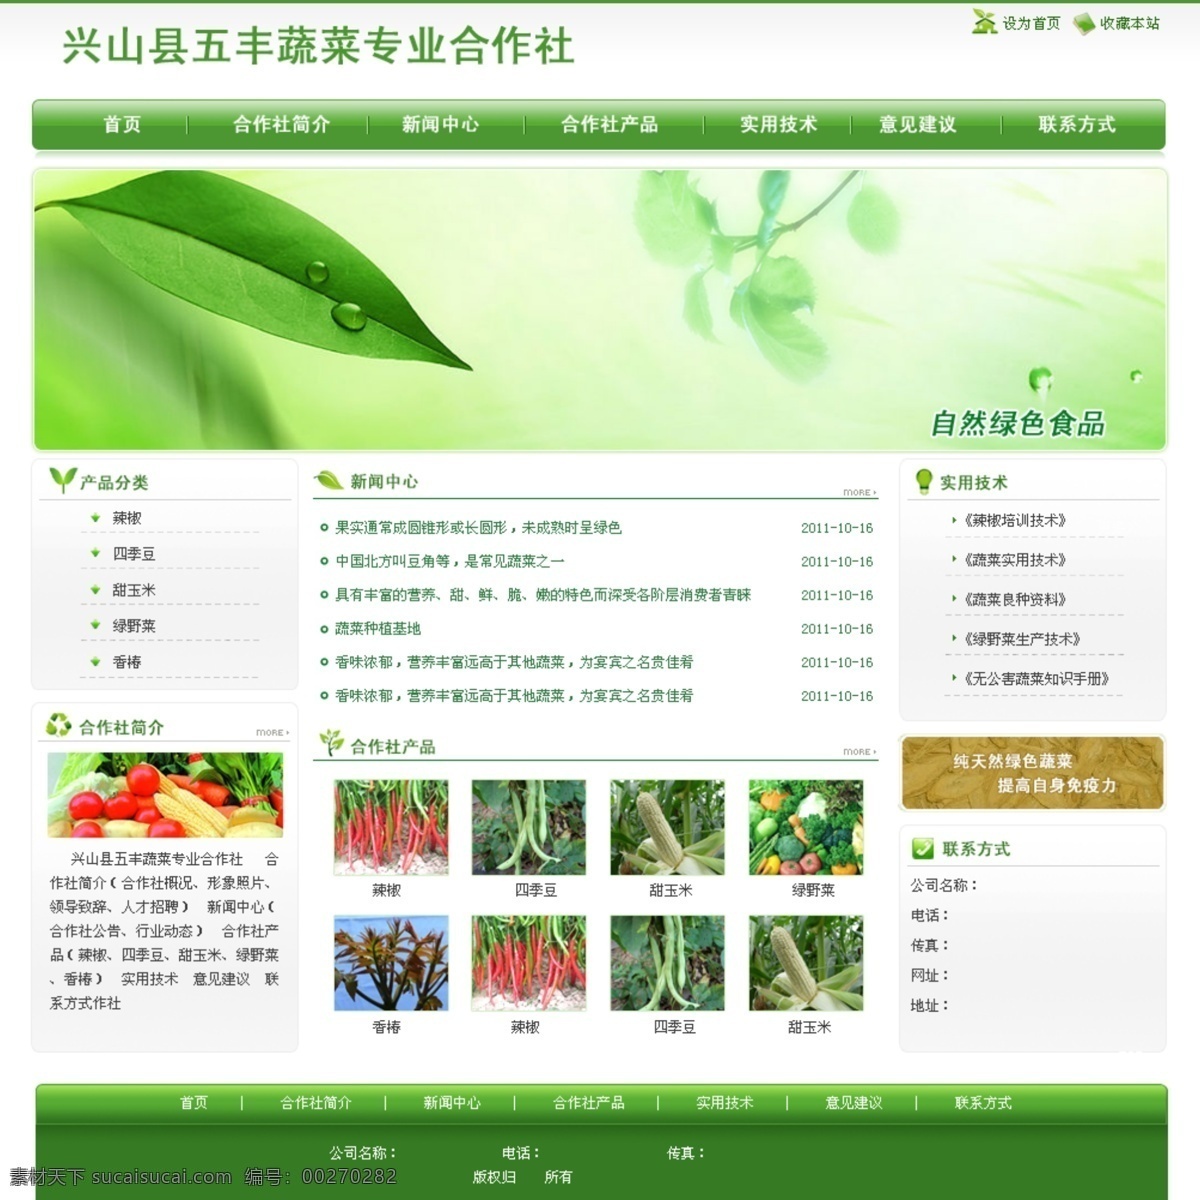 蔬菜 合作社 demo 纯天然 自然绿色食品 实用技术 合作社简介 提升免疫力 网页素材 网页模板